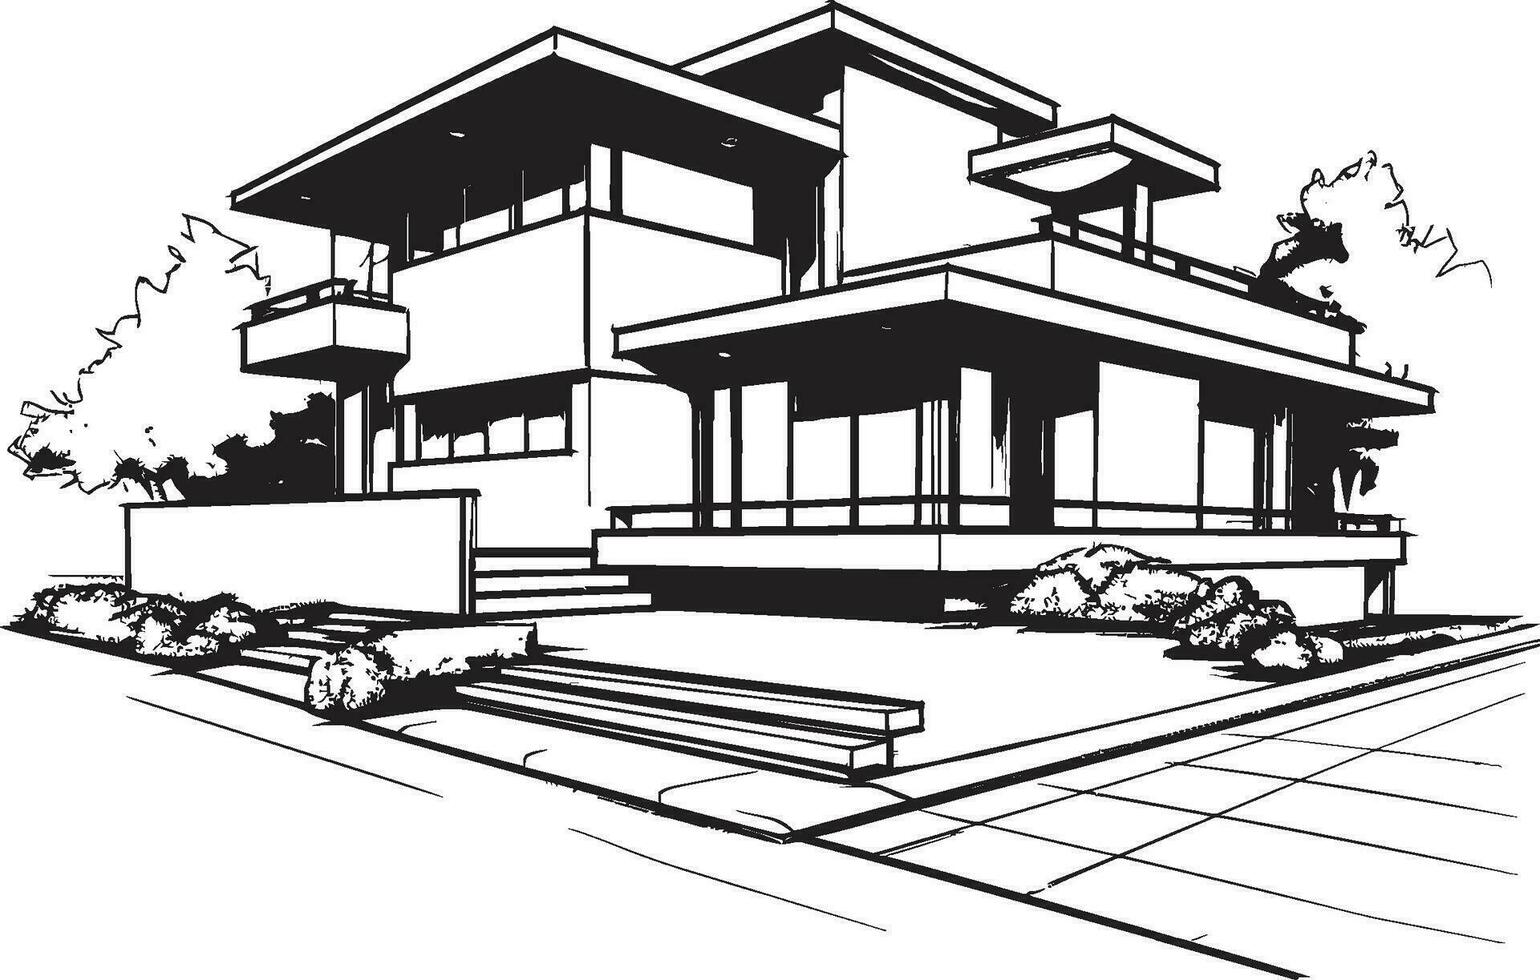 Symmetrie Entwurf Duplex Haus Design im Vektor Logo Konzept doppelt Leben Vision skizzieren Idee zum Duplex Haus Symbol